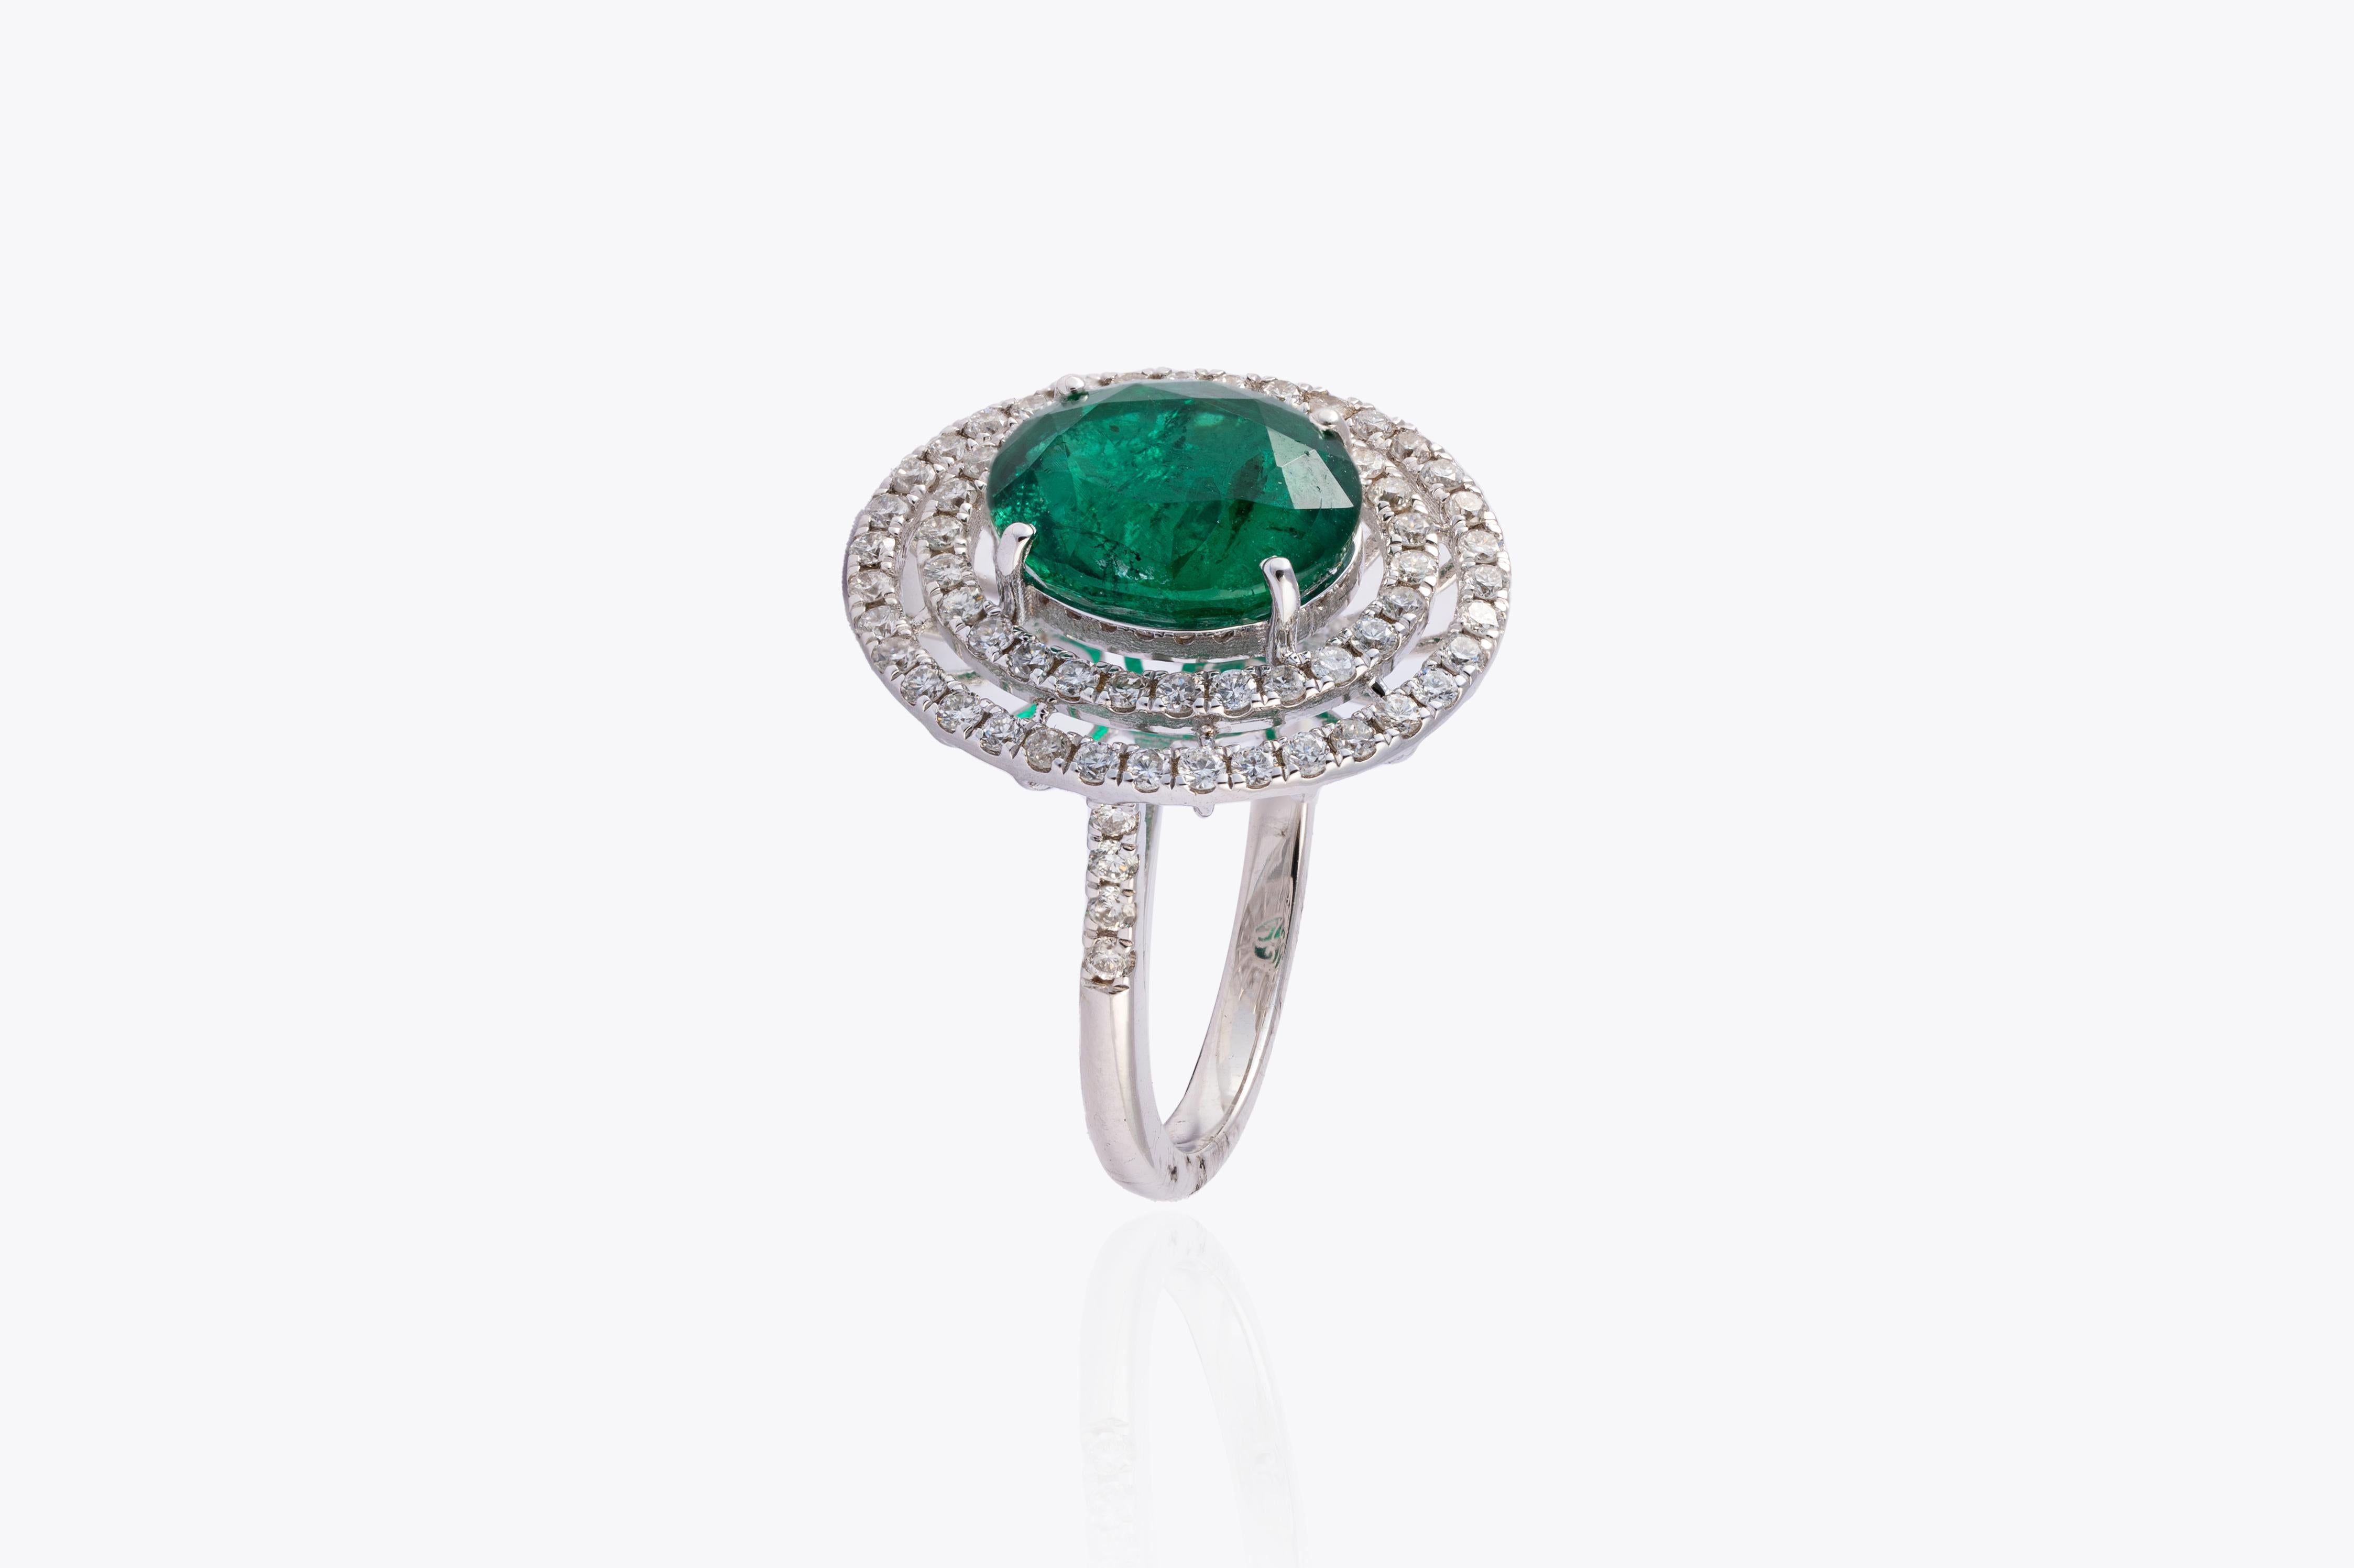 Dies ist eine atemberaubende natürliche sambischen Smaragd Ring mit sehr hoher Qualität Smaragd und sehr gute Qualität Diamanten vsi und G Farbe 
smaragd :5.97cts
diamanten :2,74cts
gold :7.048gms
sehr schwer, die wahre Farbe und den Glanz des